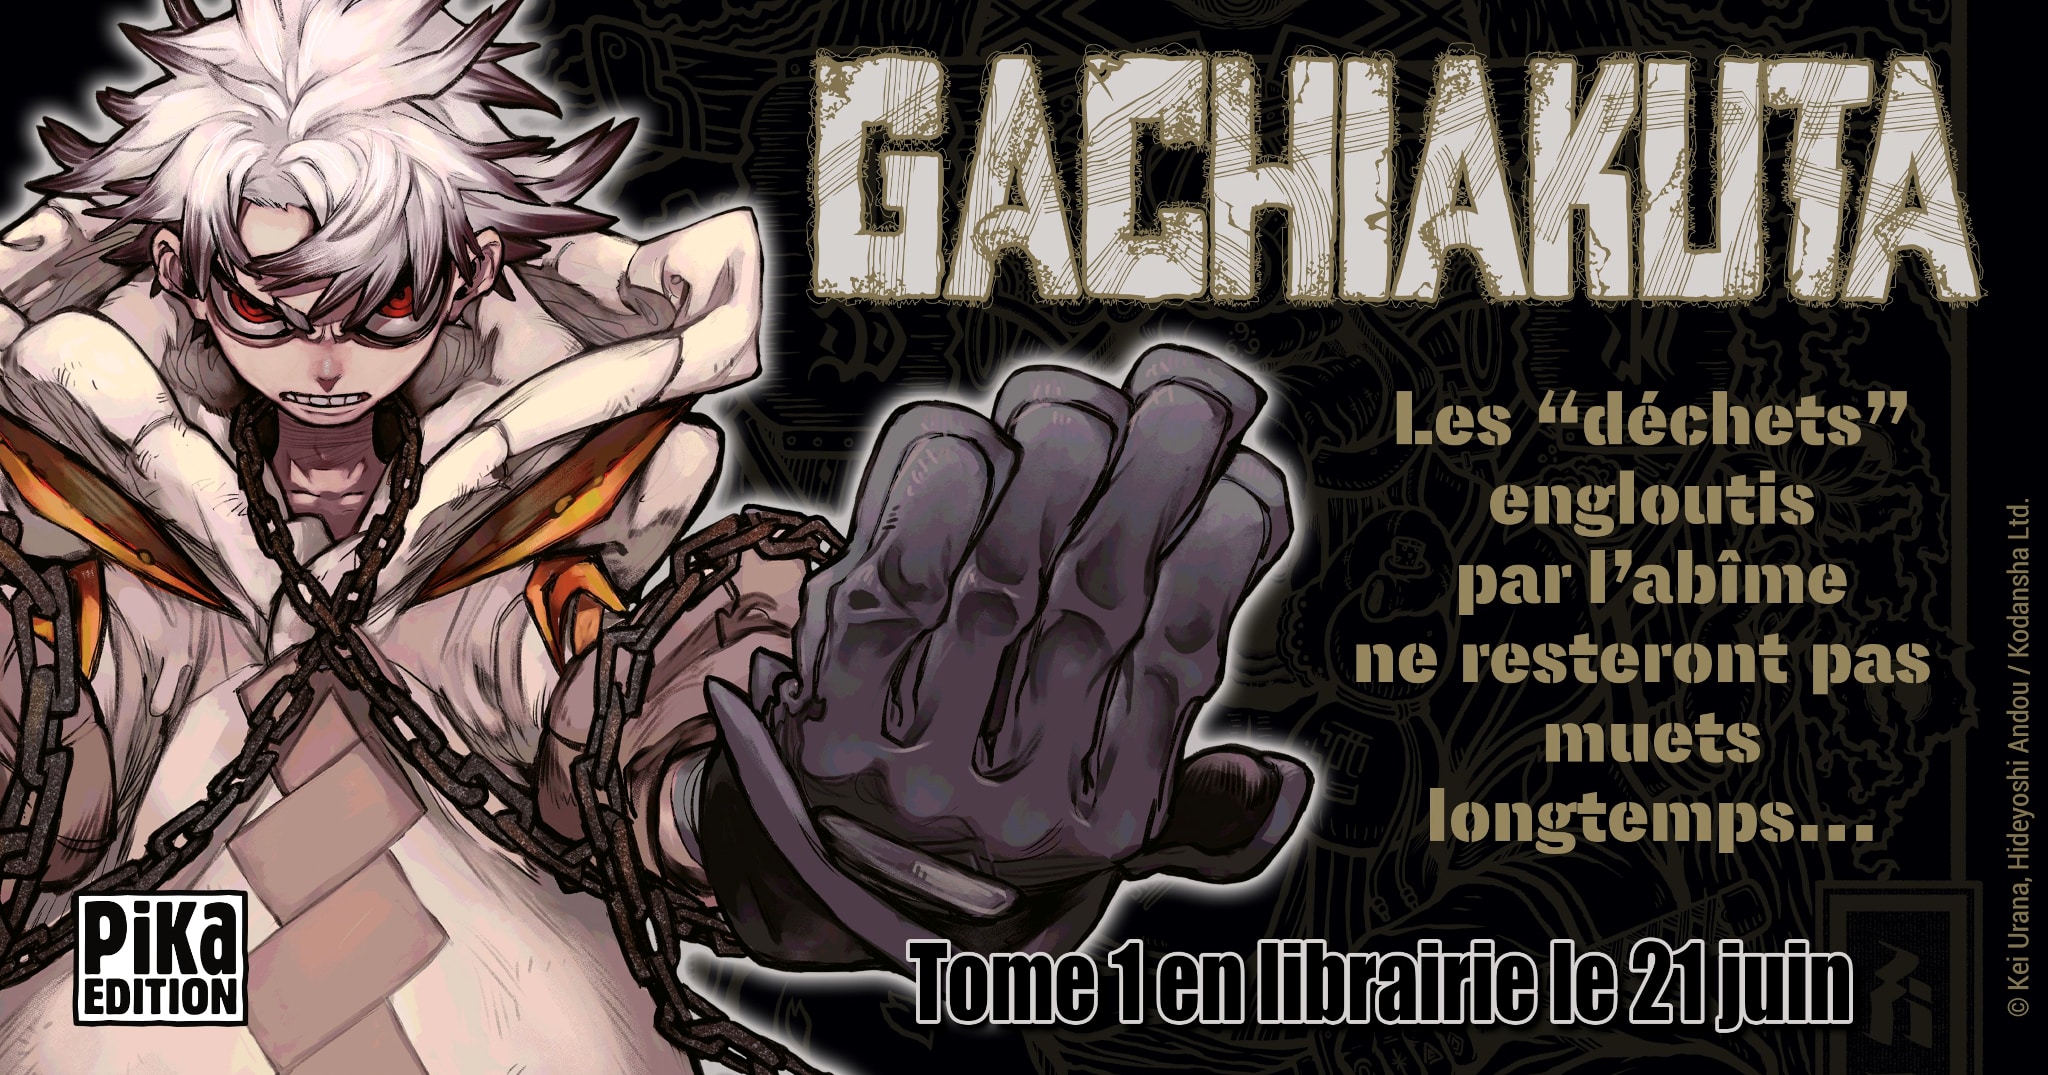 Annonce de la date de sortie en France du manga Gachiakuta aux éditions Pika